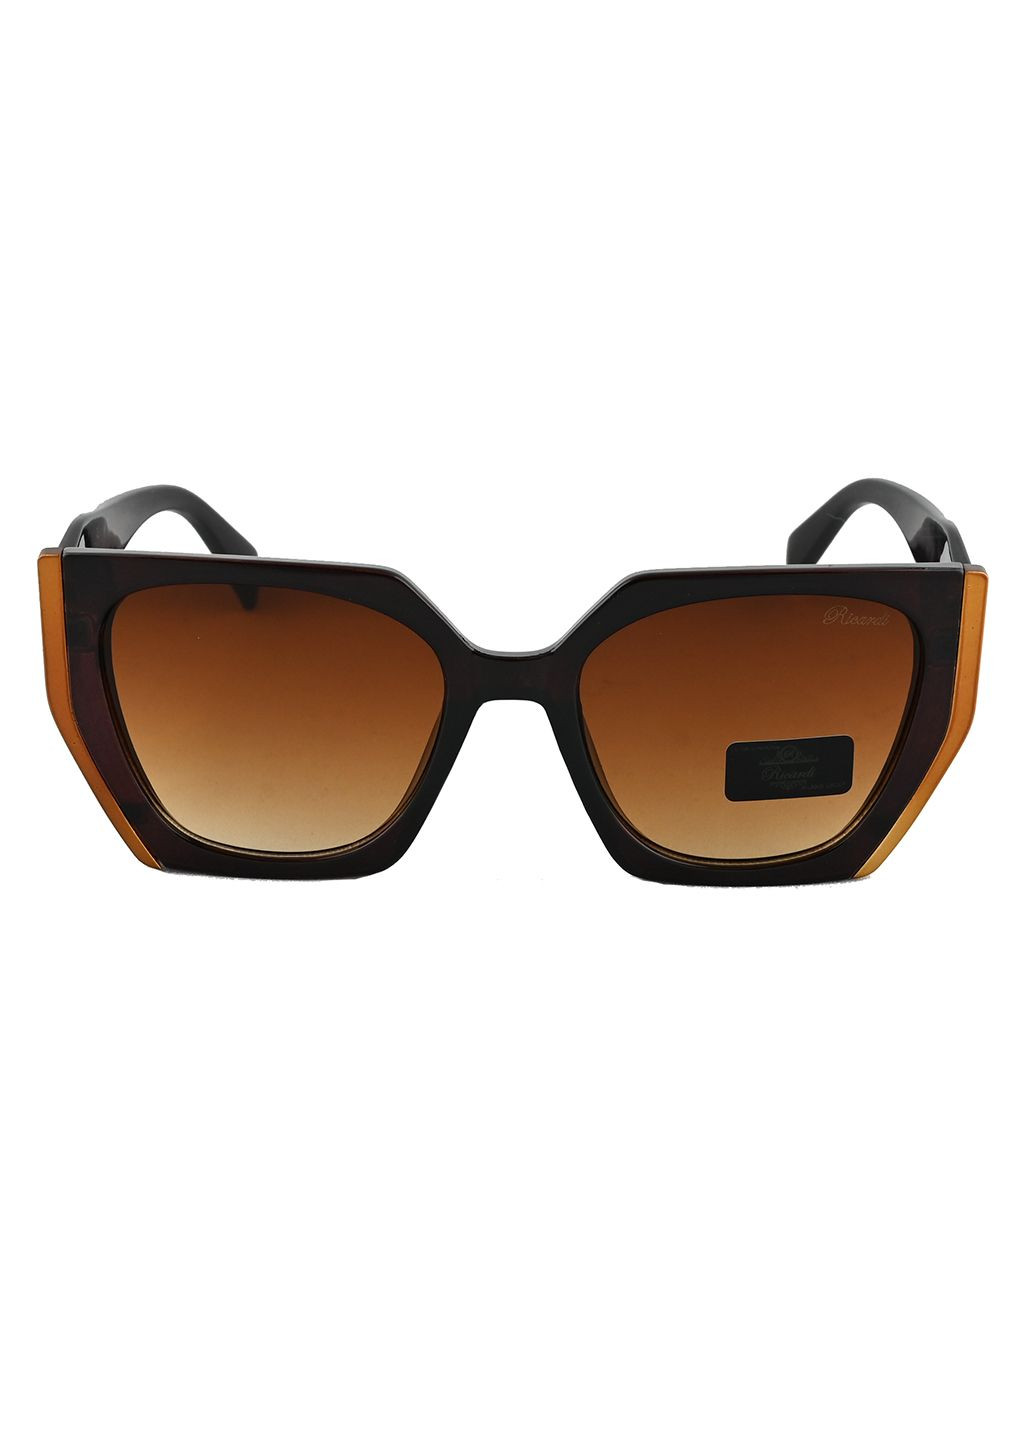 Солнцезащитные очки Ricardi (285759150)